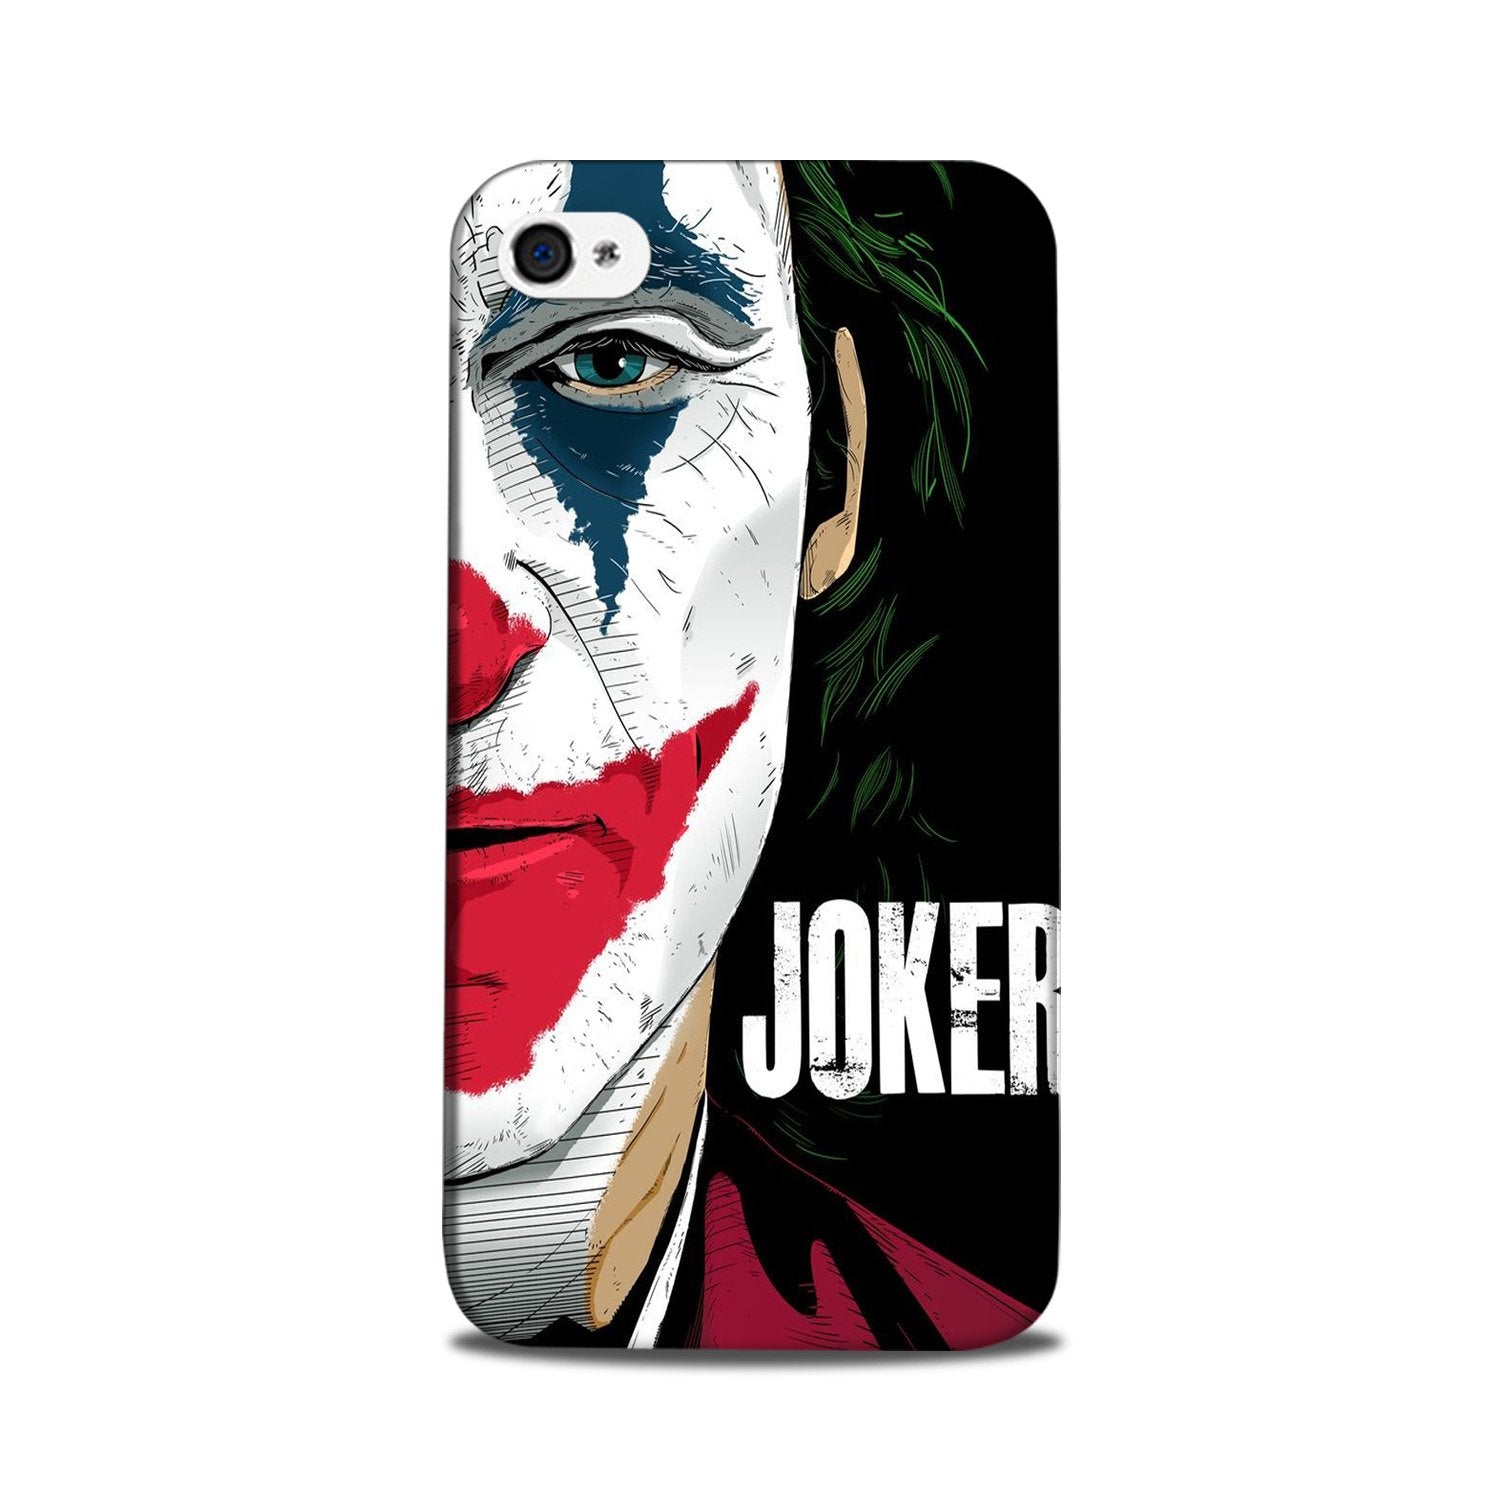 Joker Mobile Back Case for iPhone 5/ 5s(Design - 301)